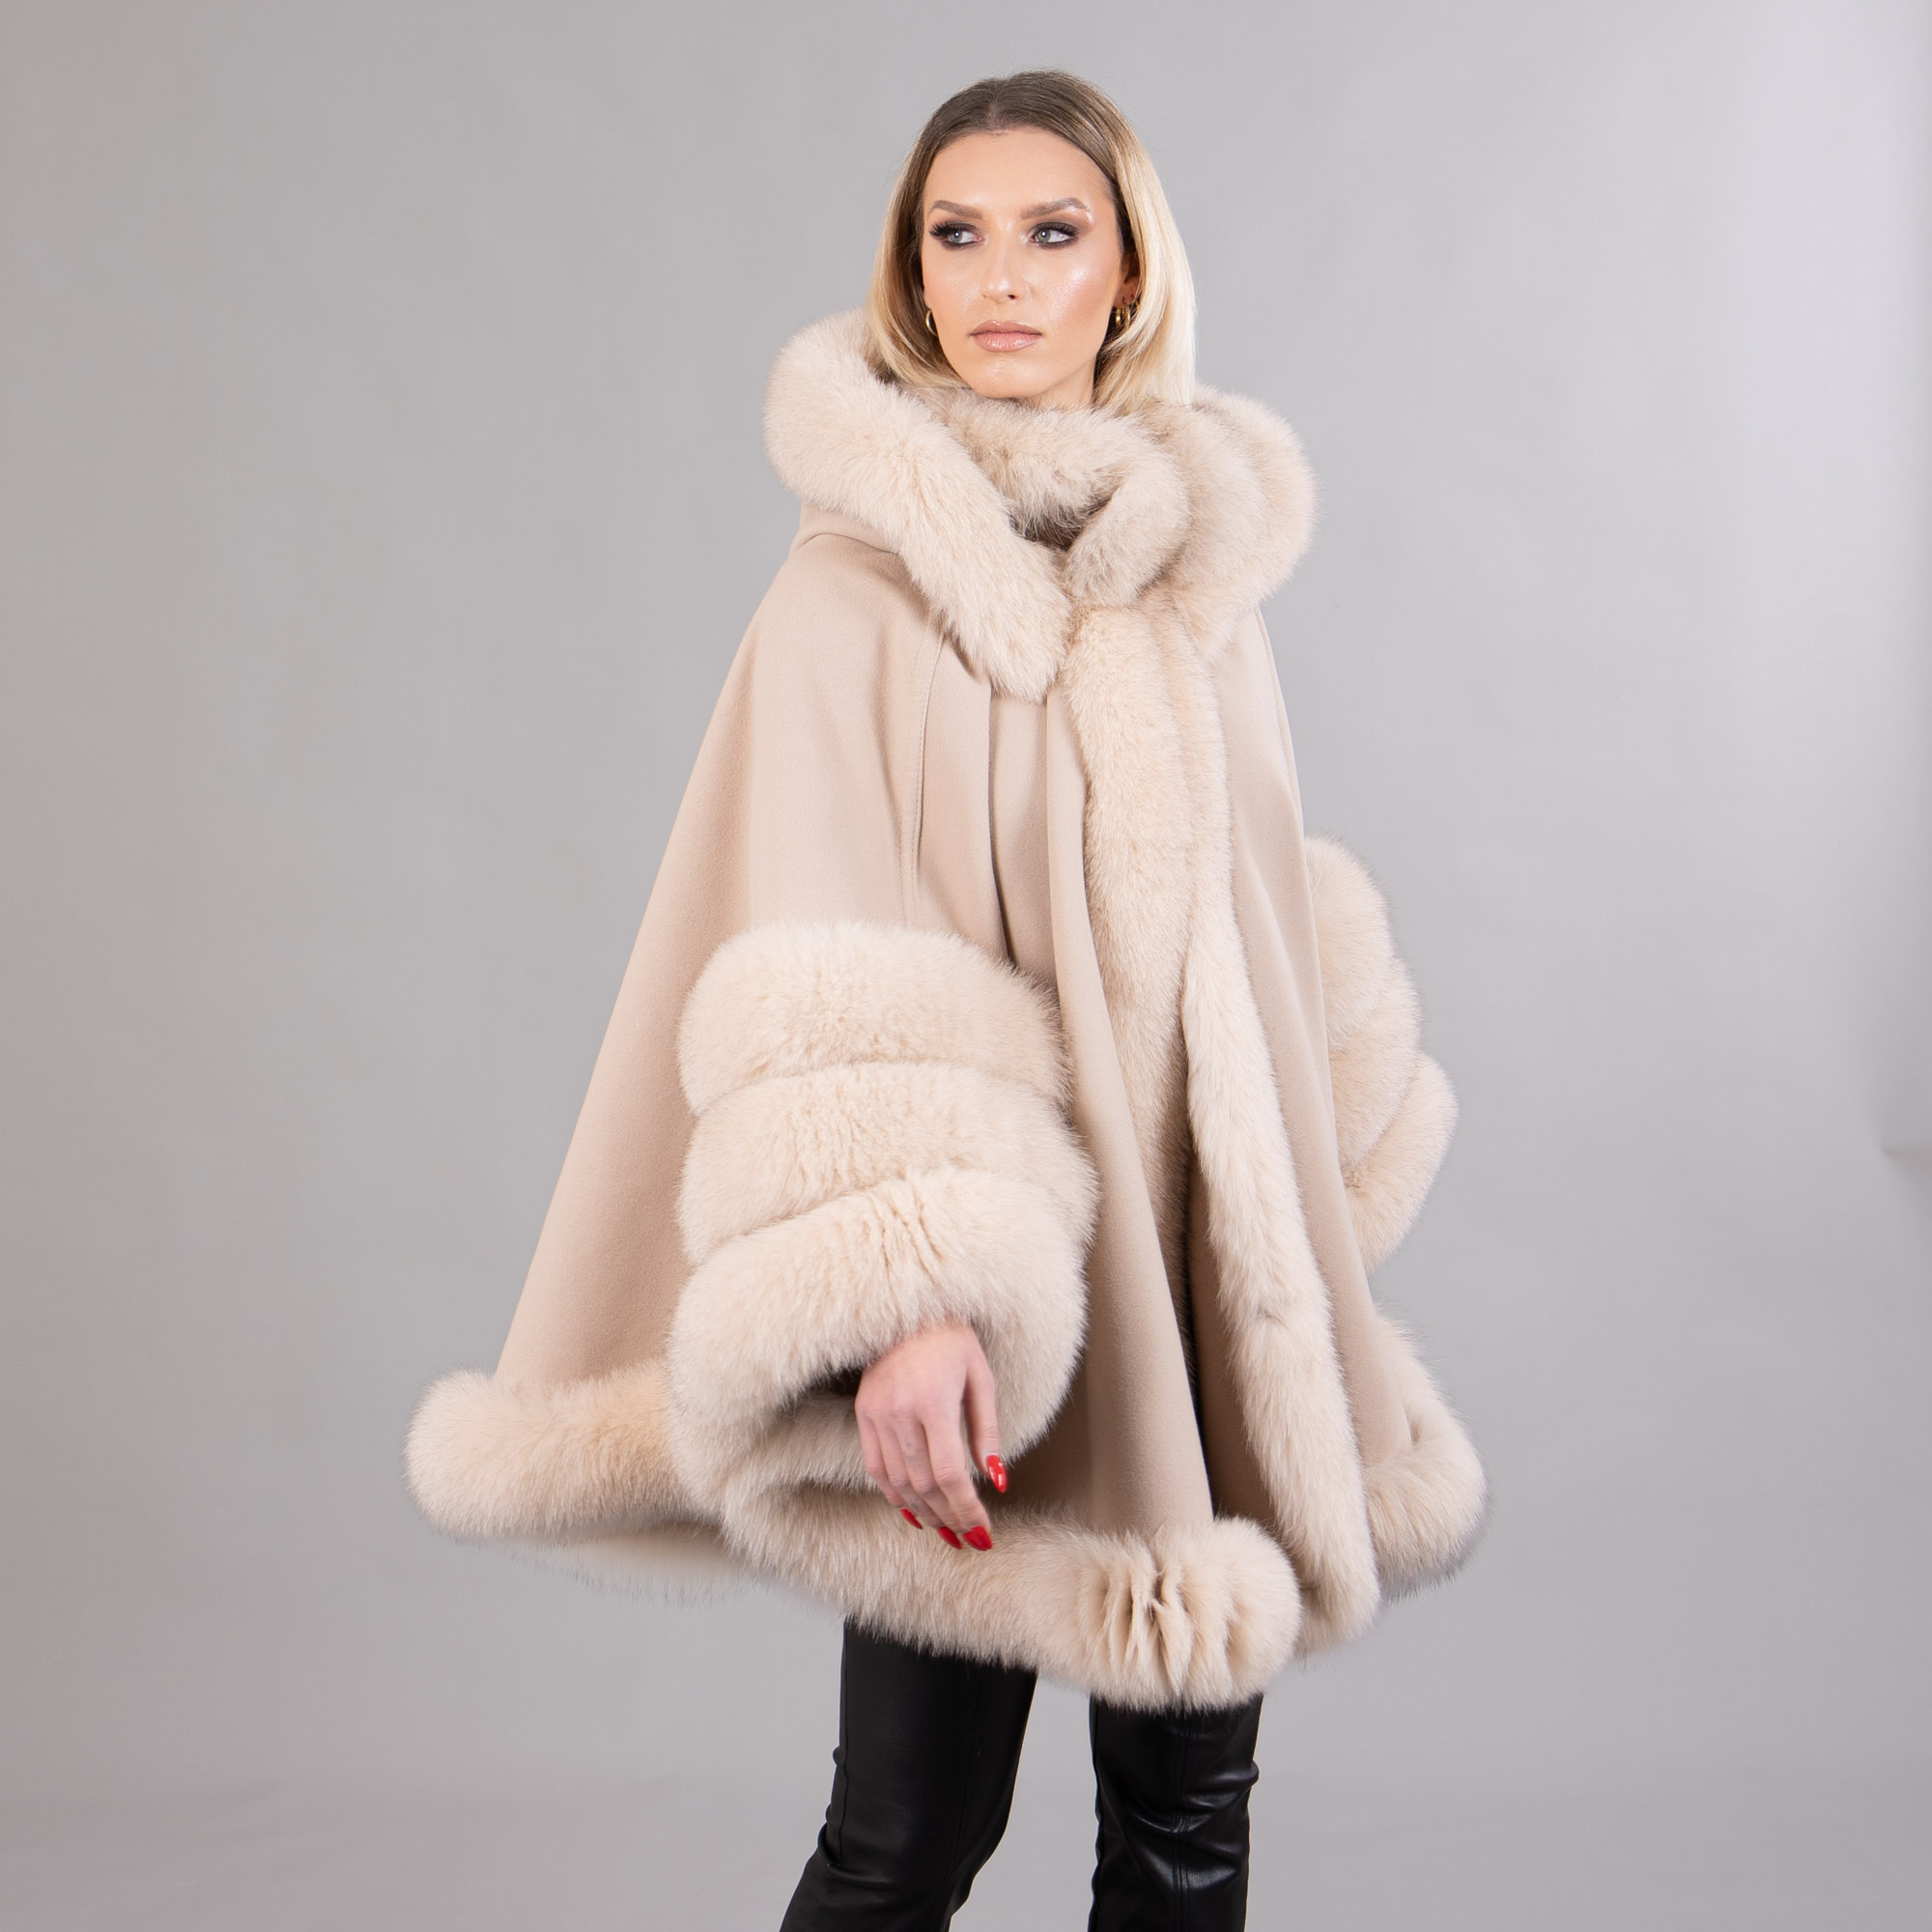 Beige cashmere cape with fox fur details